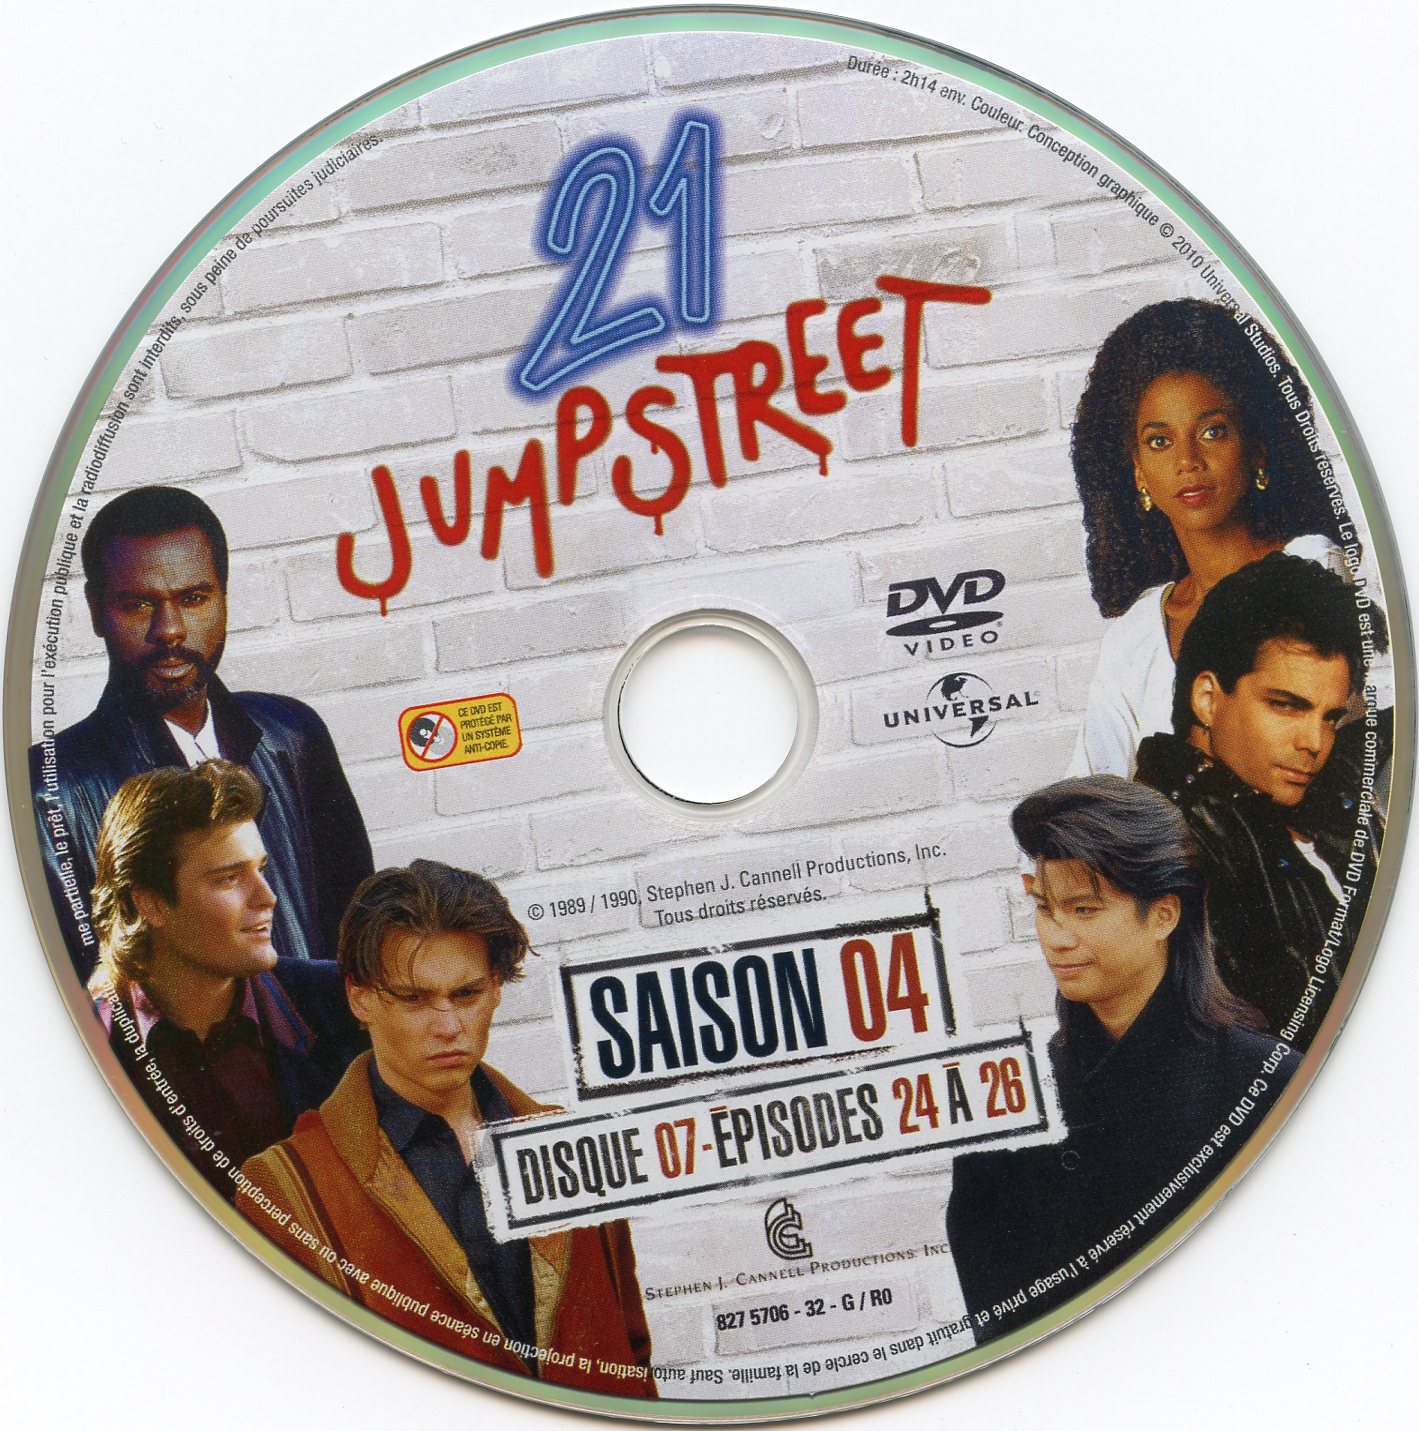 21 jump street Saison 4 DVD 7